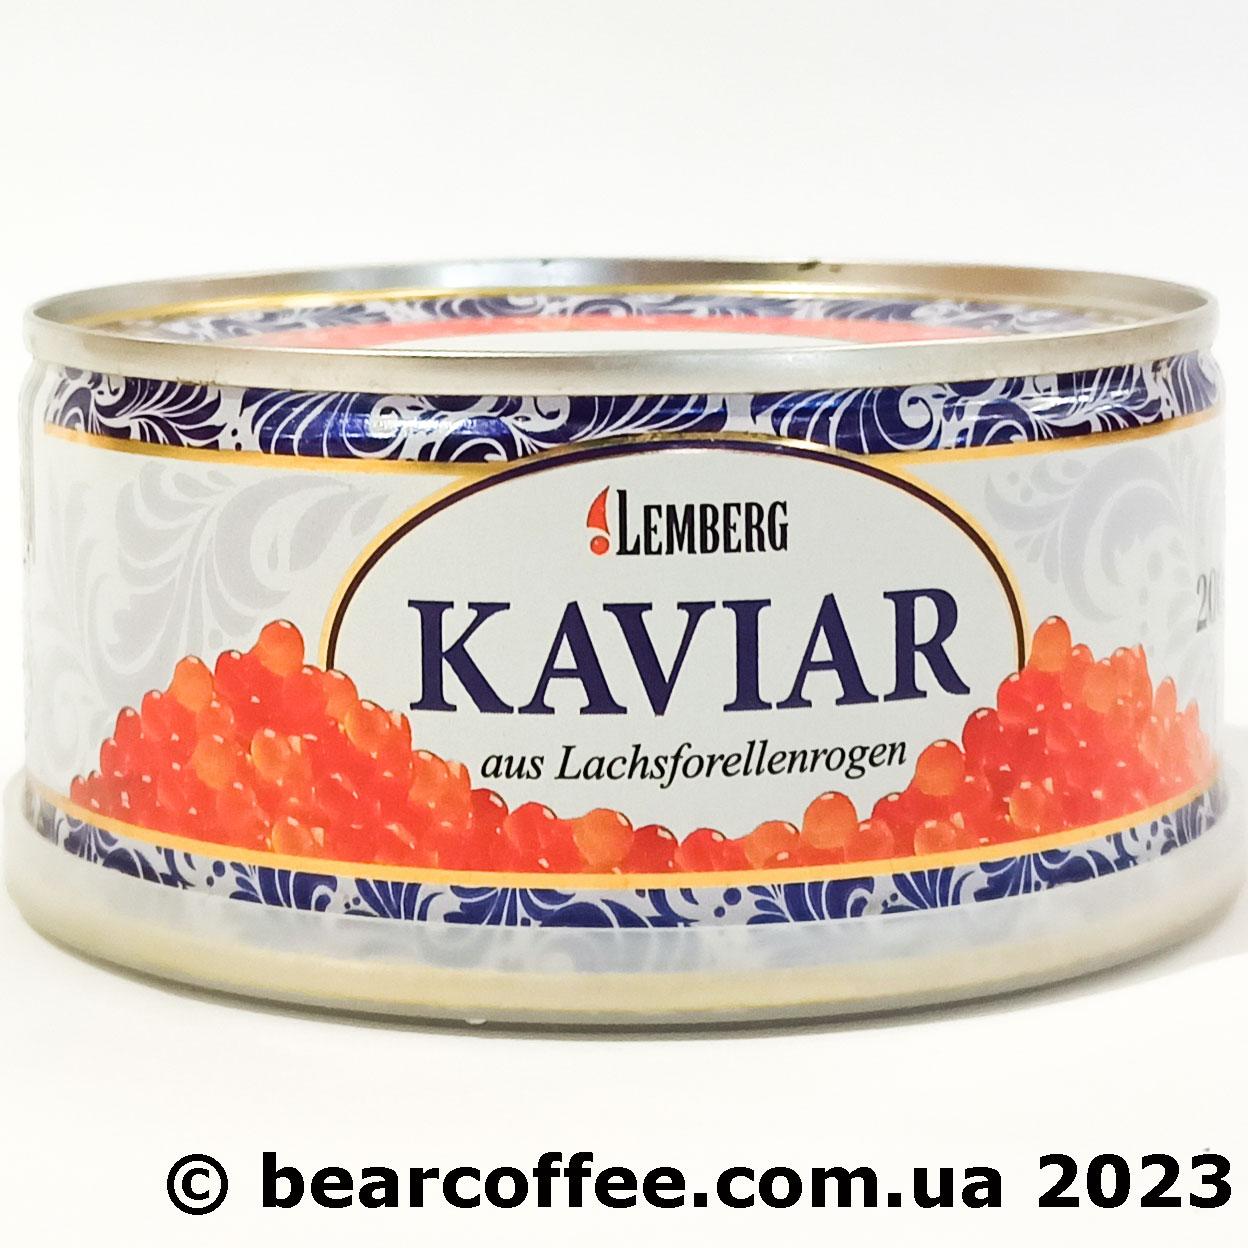 Ікра форелі червона Lemberg kaviar aus Lachsforellenrogen 200г Німеччина